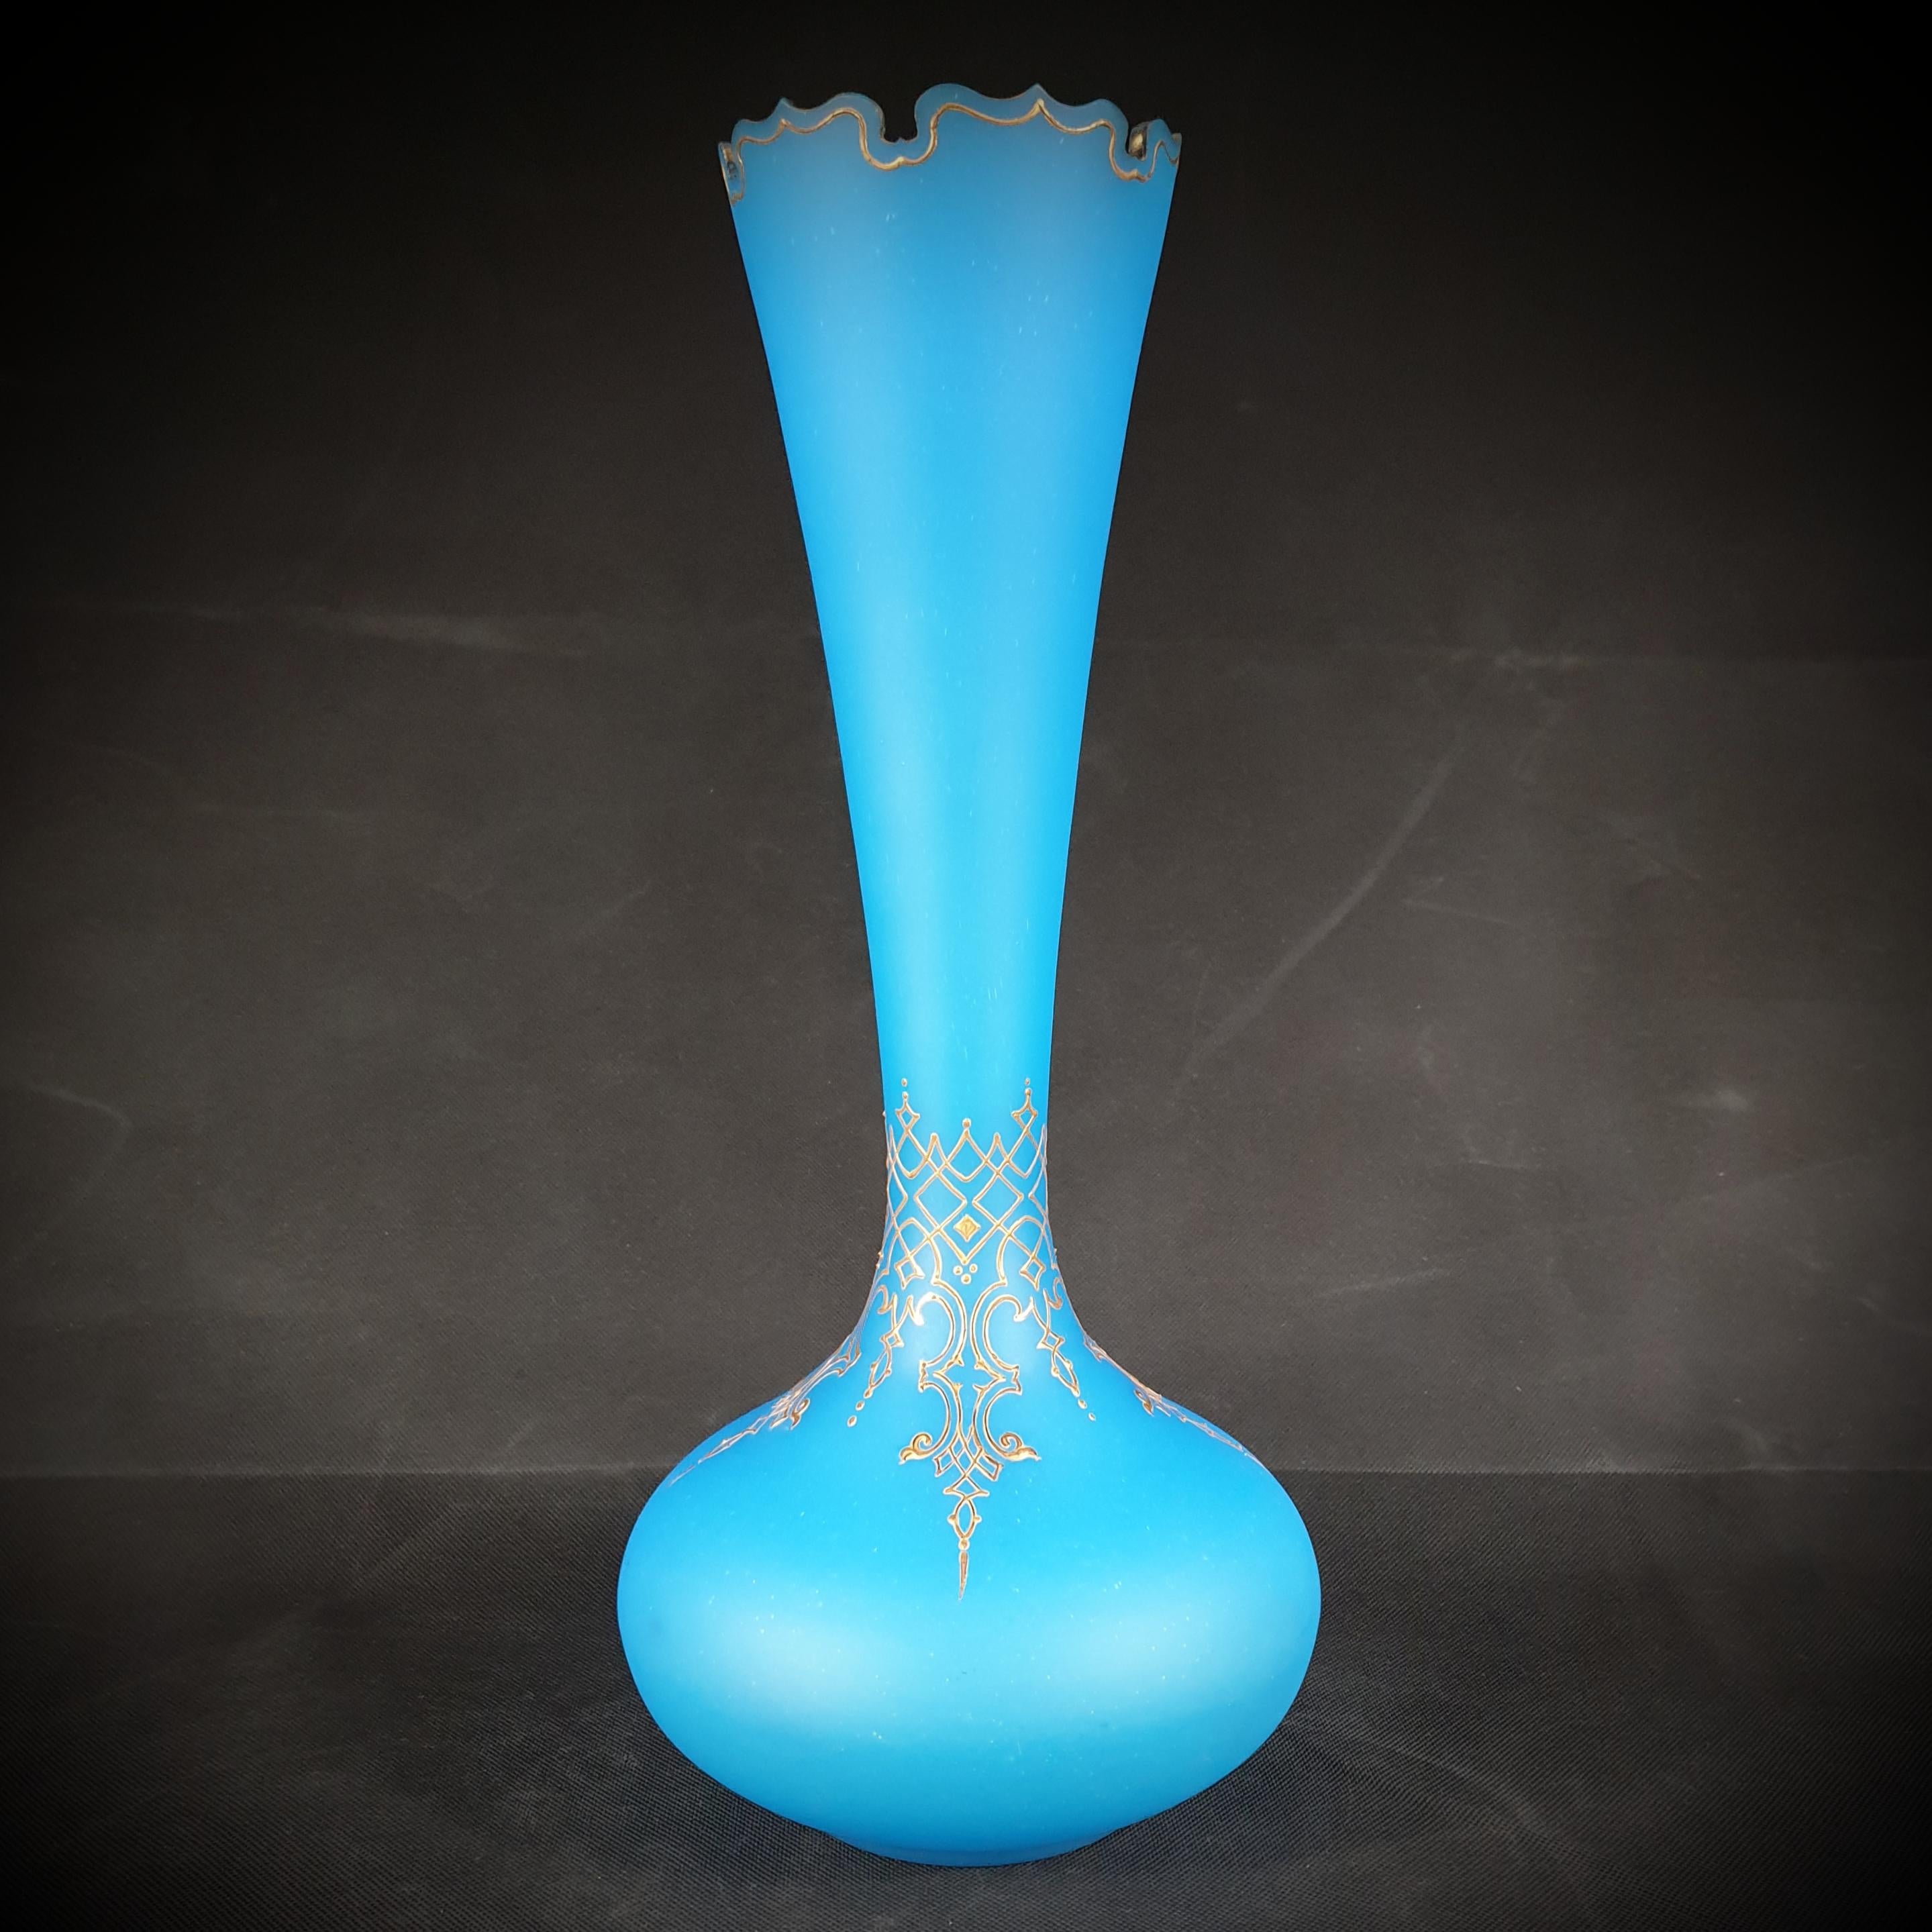 Vous êtes à la recherche d'un magnifique ensemble de vases qui transformeront instantanément n'importe quelle pièce ? Ne cherchez pas plus loin que cette paire de vases bleu opaline, qui sont grands et élégamment conçus ! Ces vases, fabriqués en